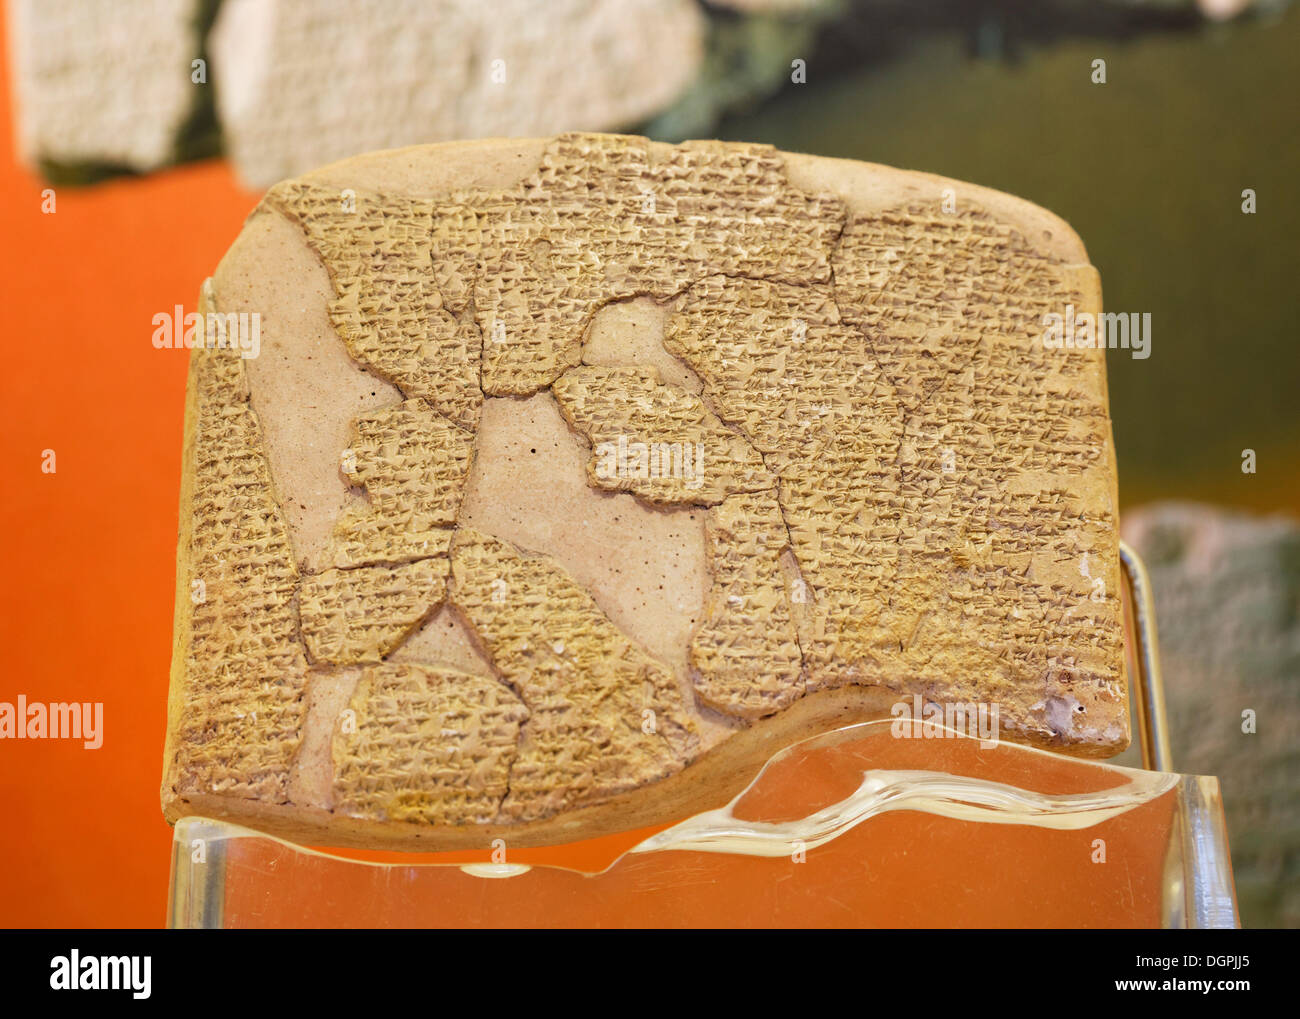 Mundial del primer tratado de paz después de la batalla de Kadesh, en la cuneiforme, antiguo Departamento de Oriente, Museo Arqueológico de Estambul. Foto de stock